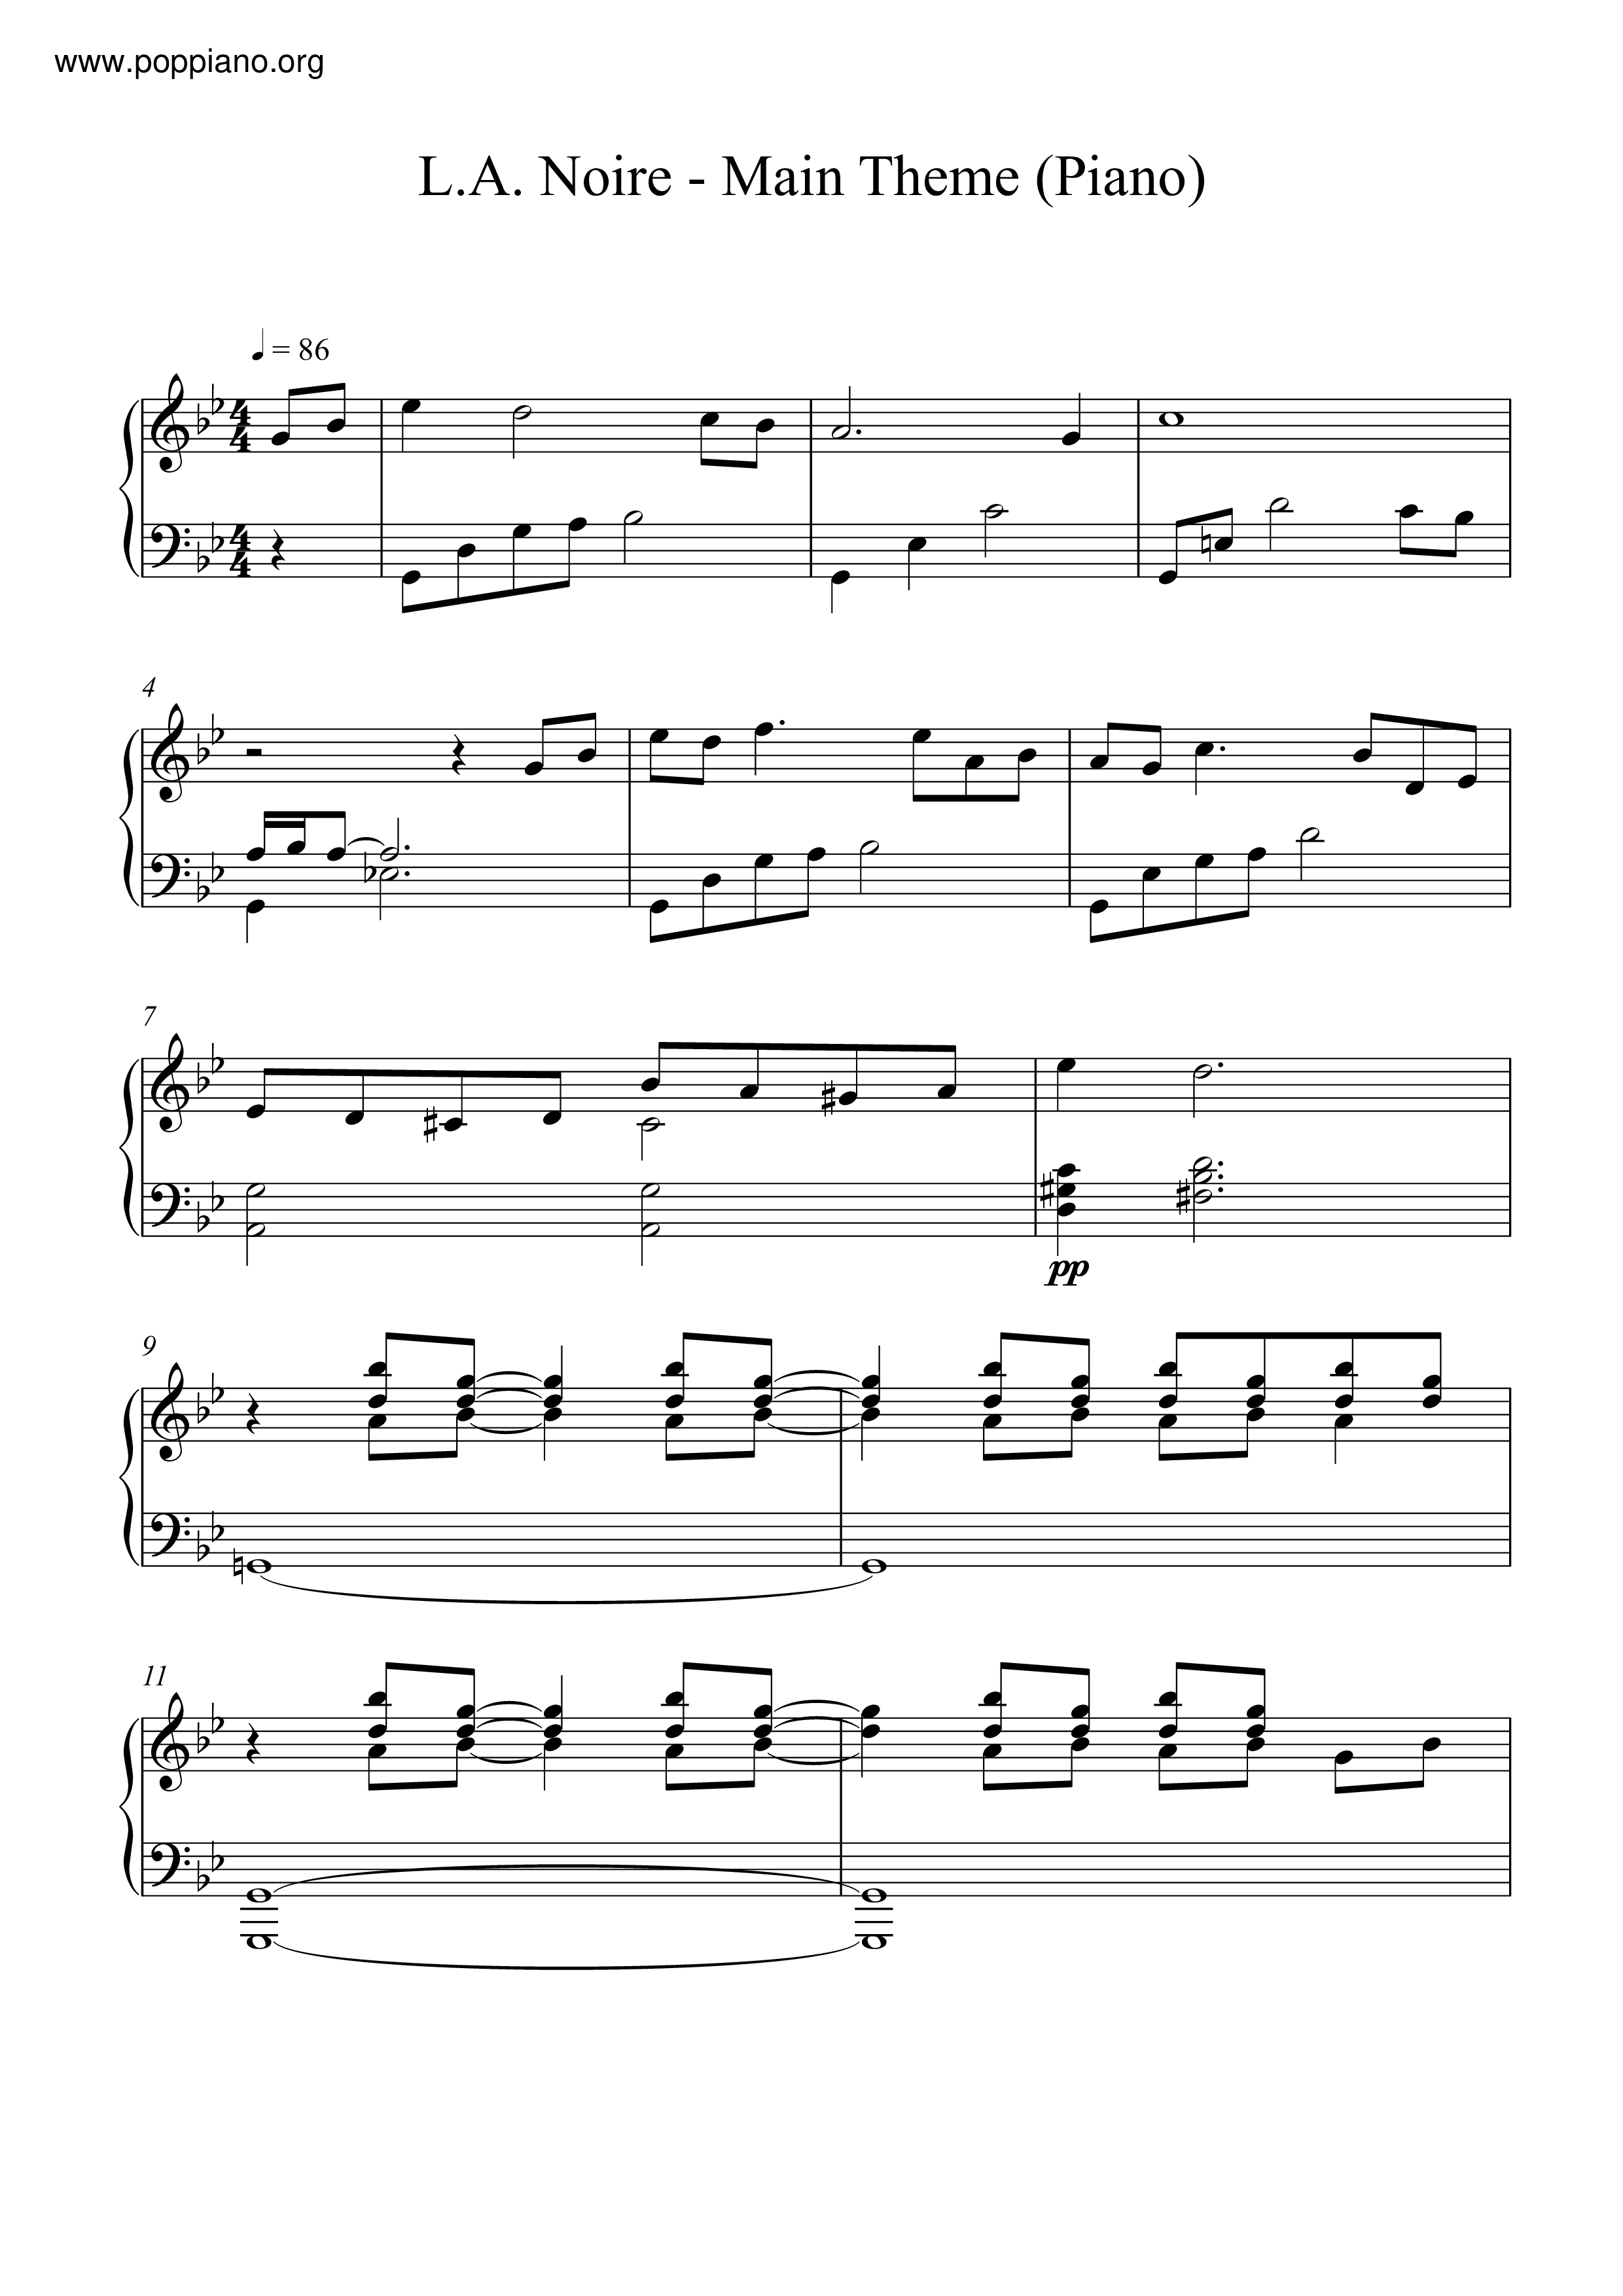 L.A. Noire - Main Themeピアノ譜